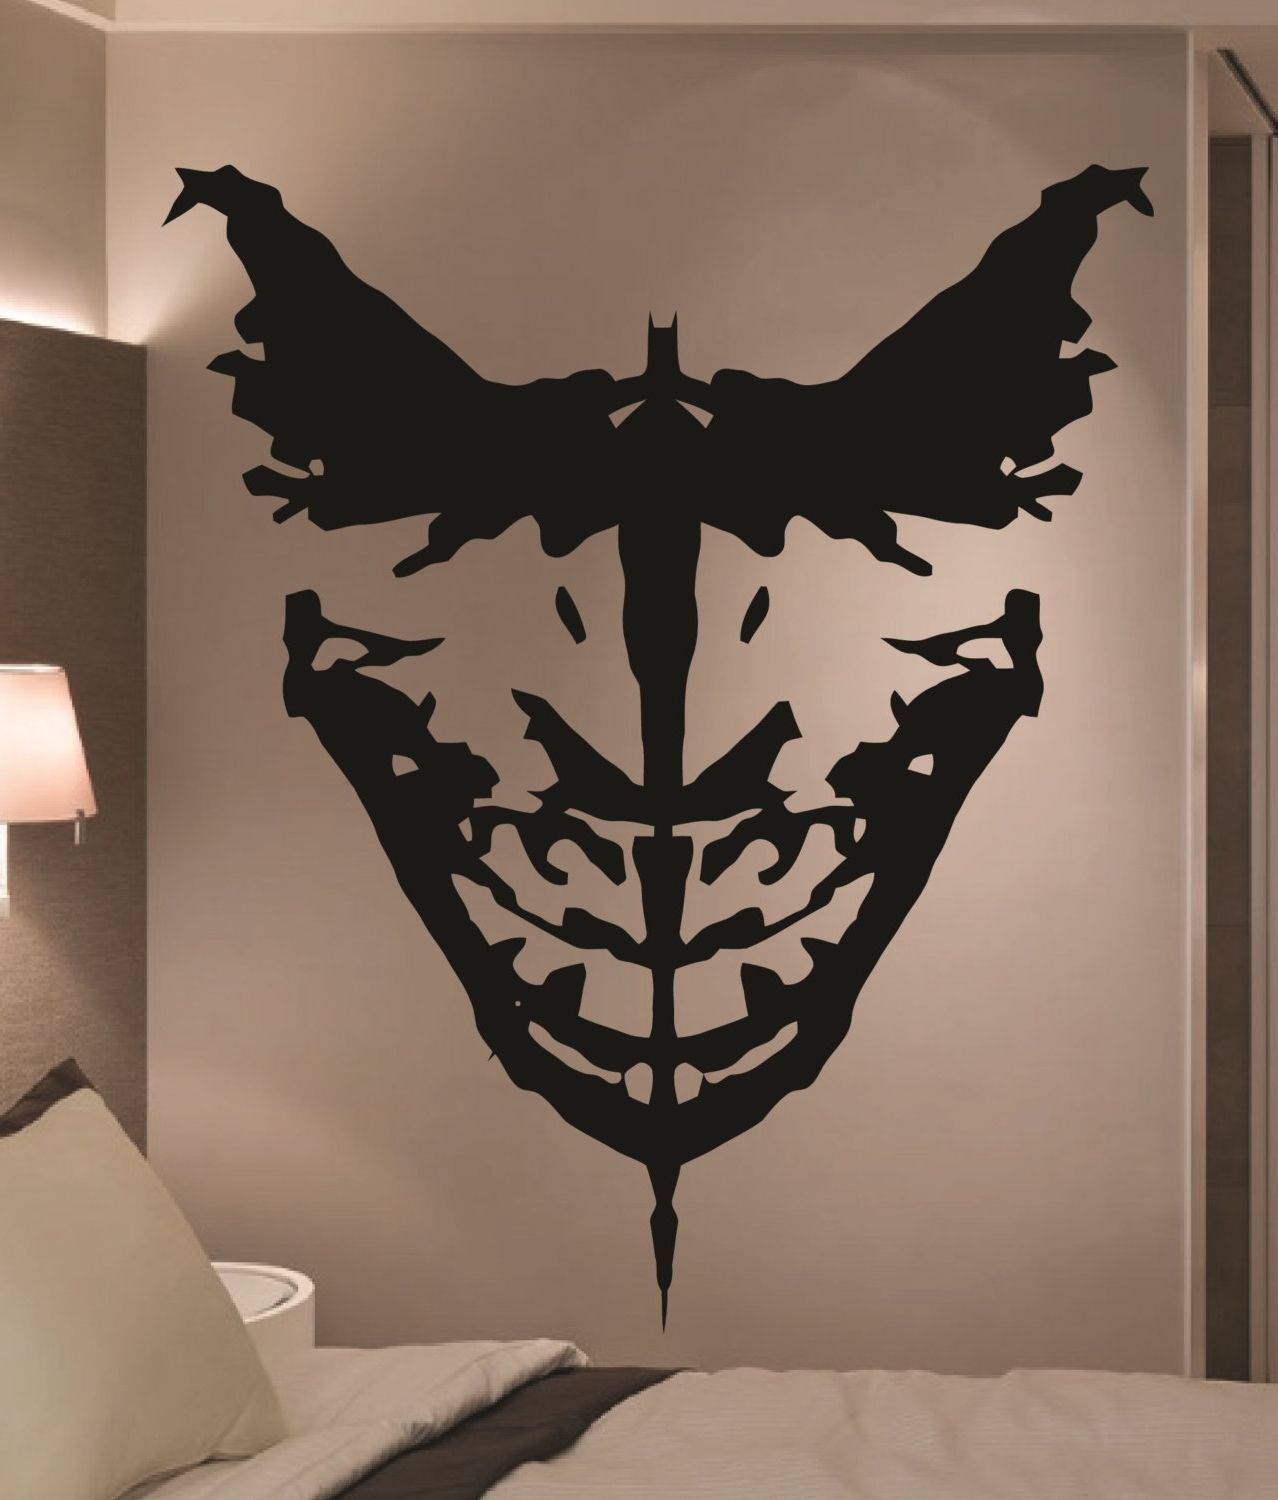 Preferred Joker Wall Art Throughout Joker Wall Art – Elitflat (Photo 11 of 15)